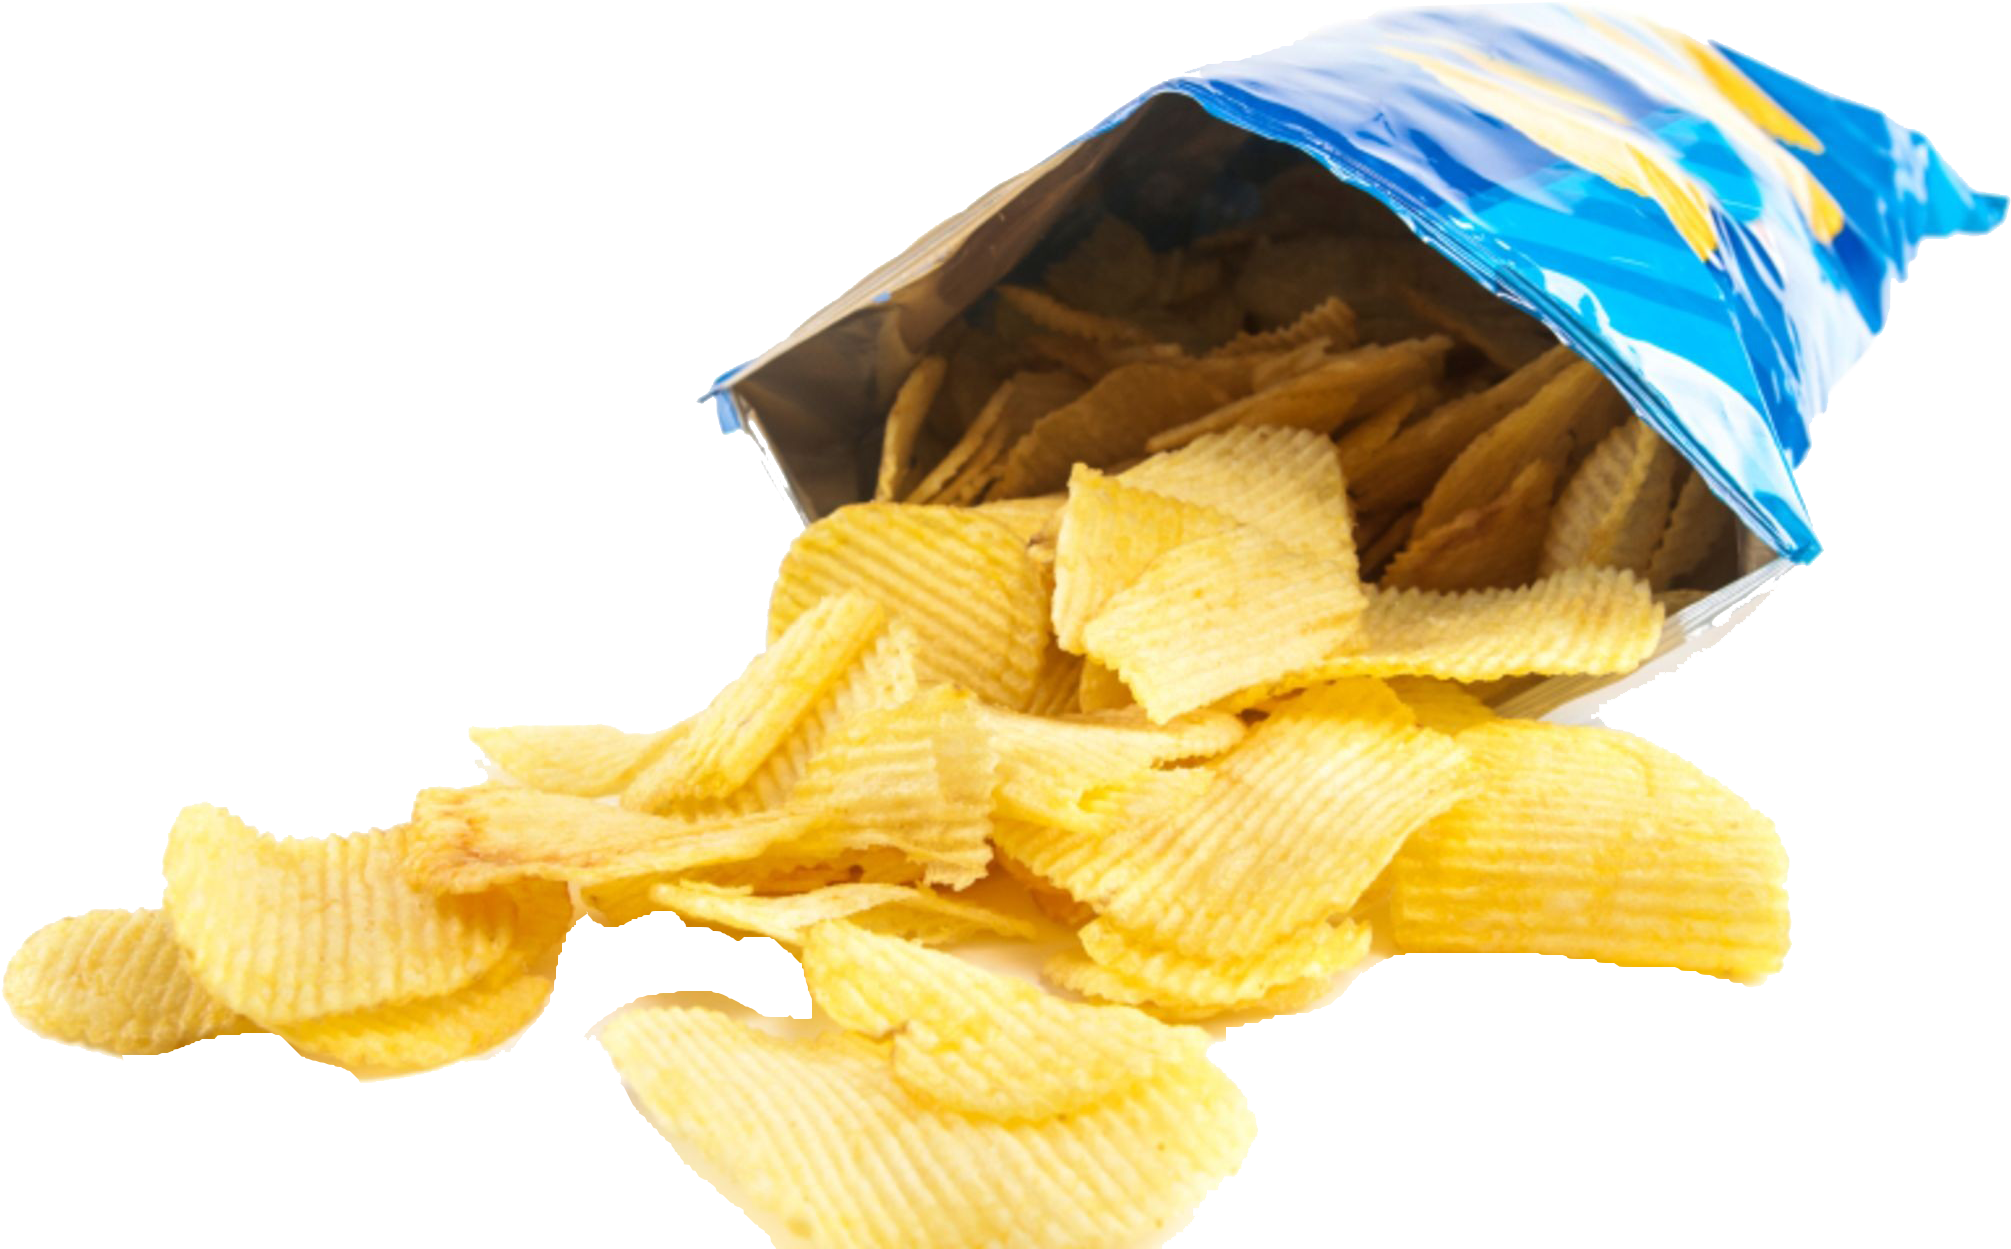 Potato Chips Spillingfrom Bag